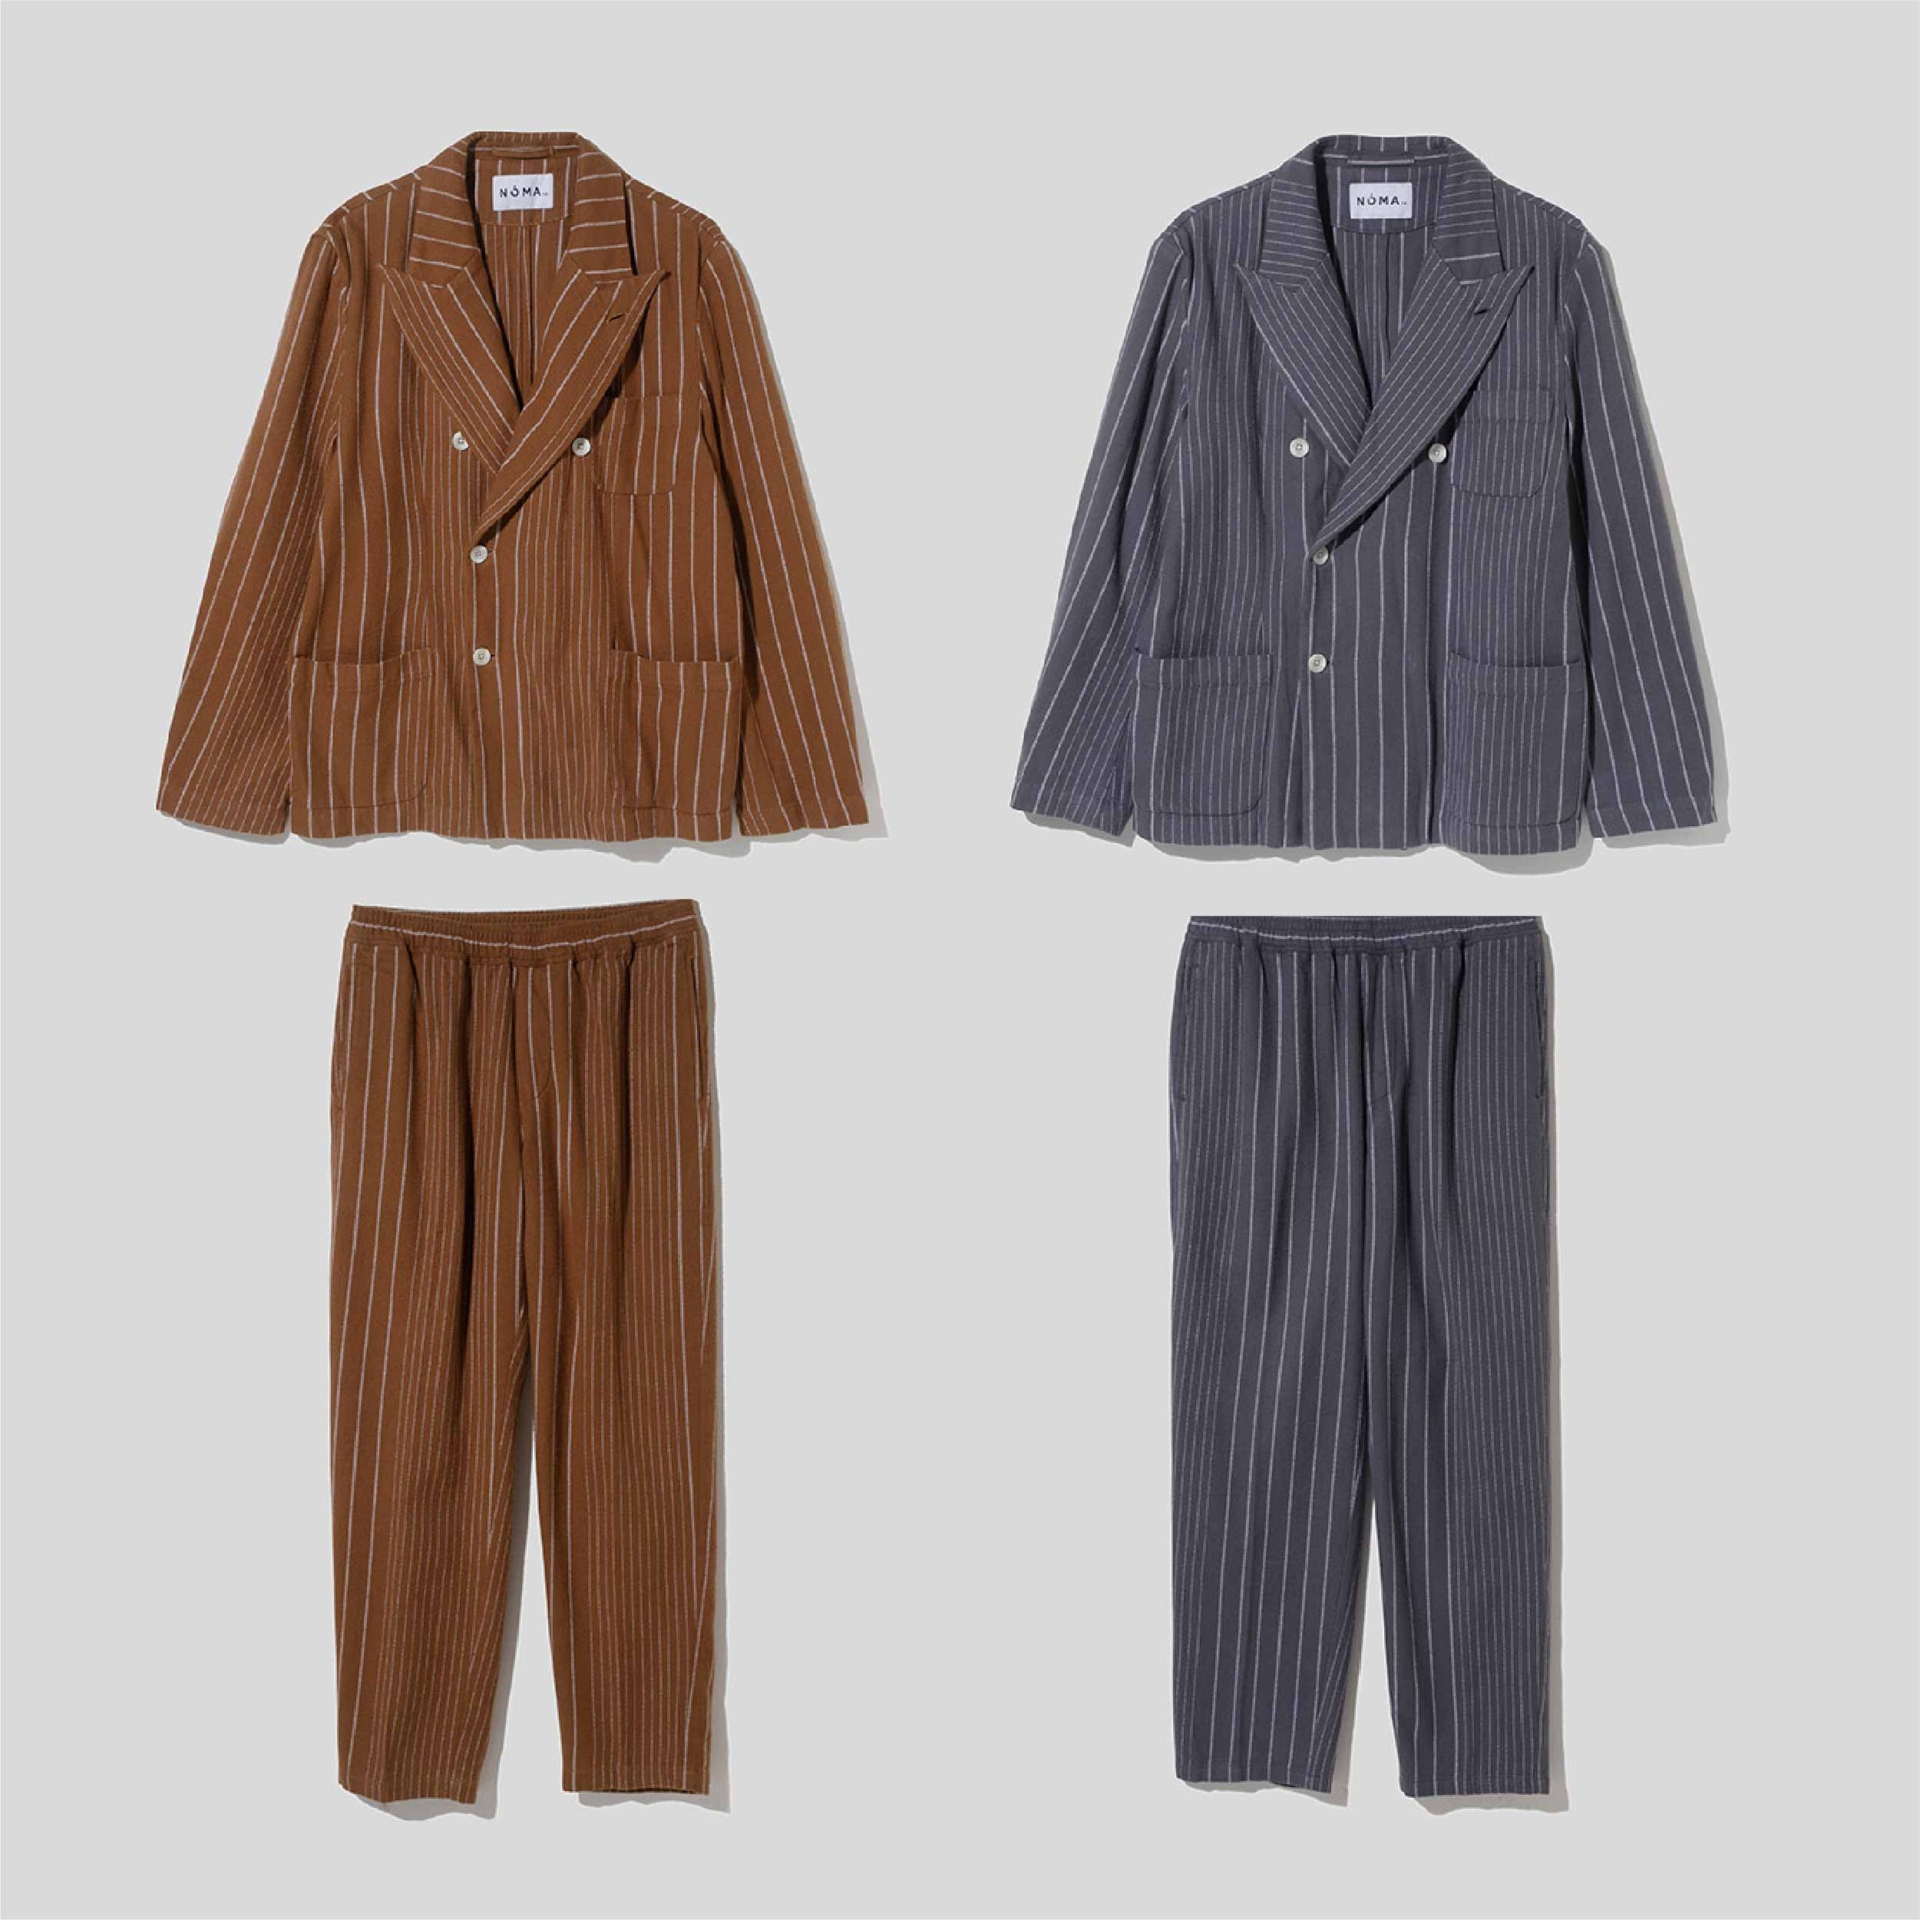 NOMA t.d. – Pin Stripe Trousers (Walnut) / 20FW 條紋長褲 (核桃色) 9